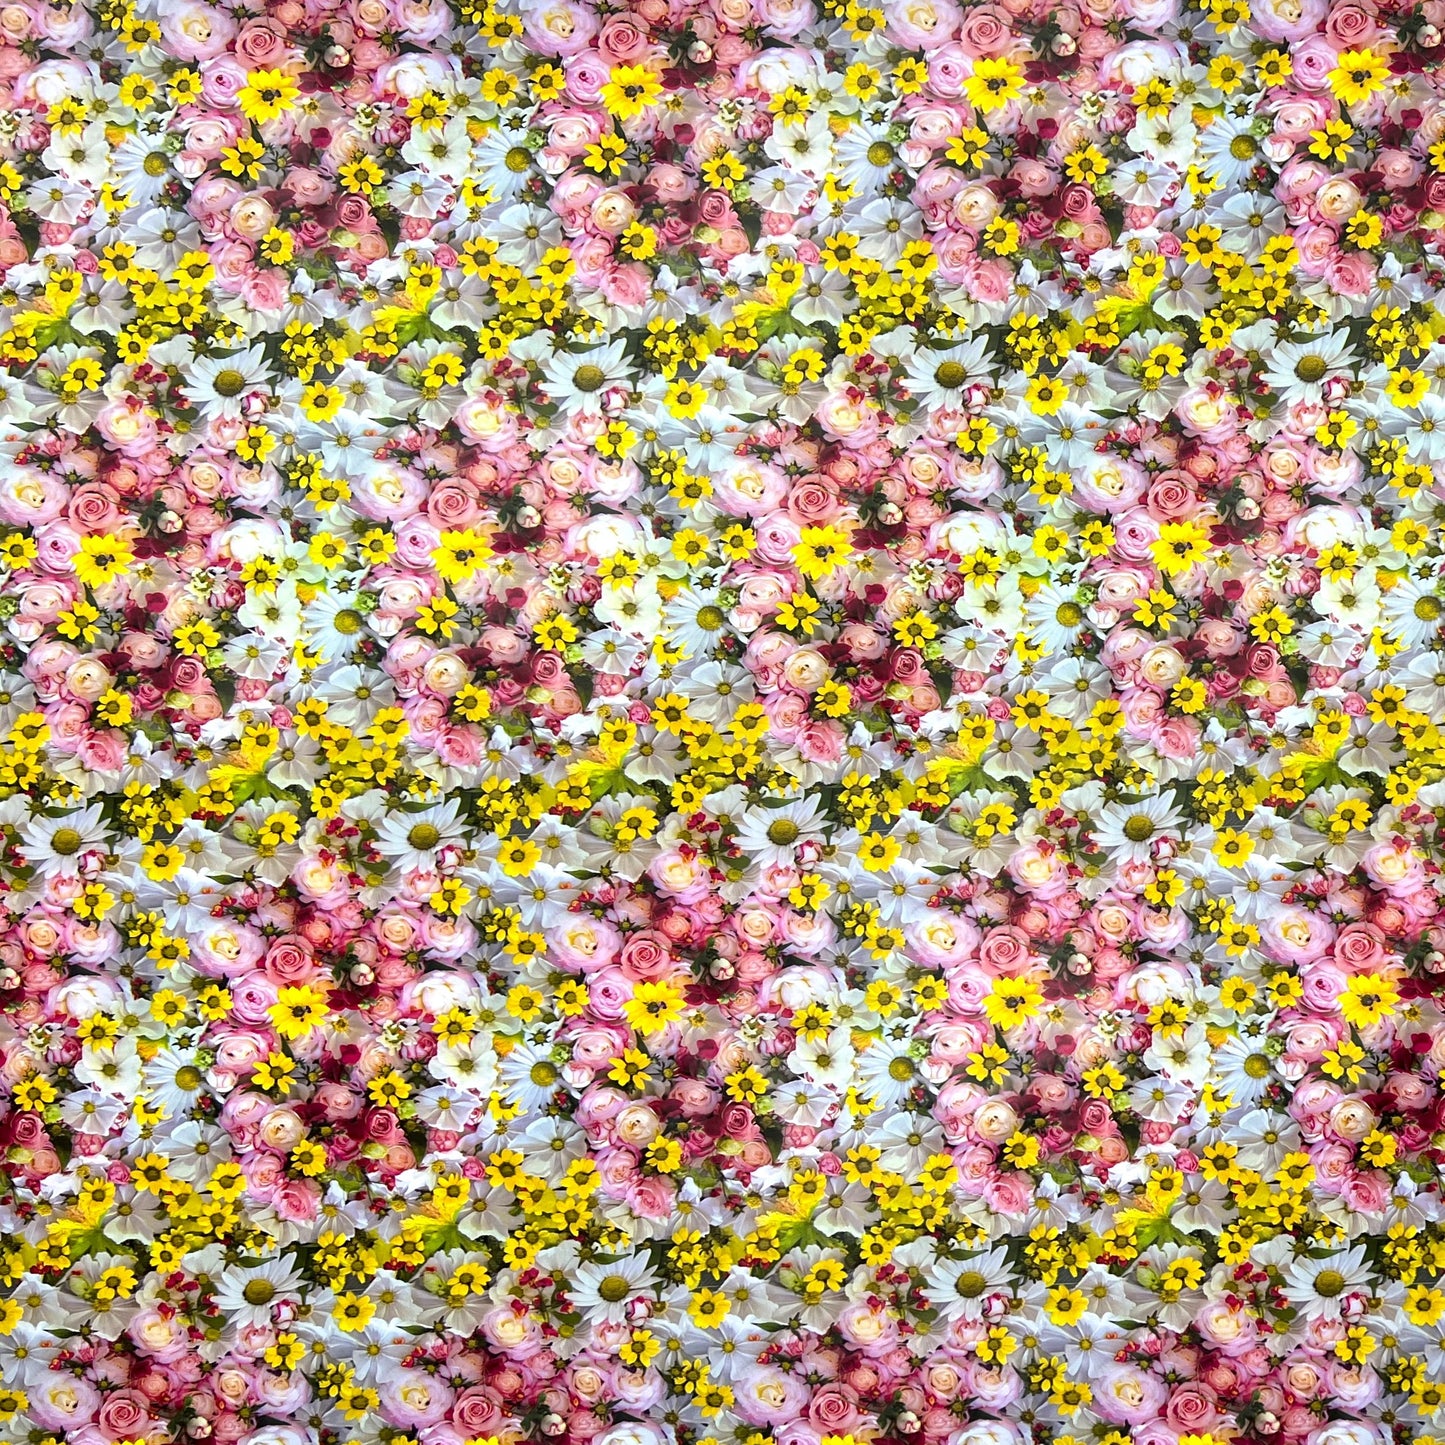 Wachstuch Tischdecke E190 Blumenwiese Sommer Rosen eckig rund oval